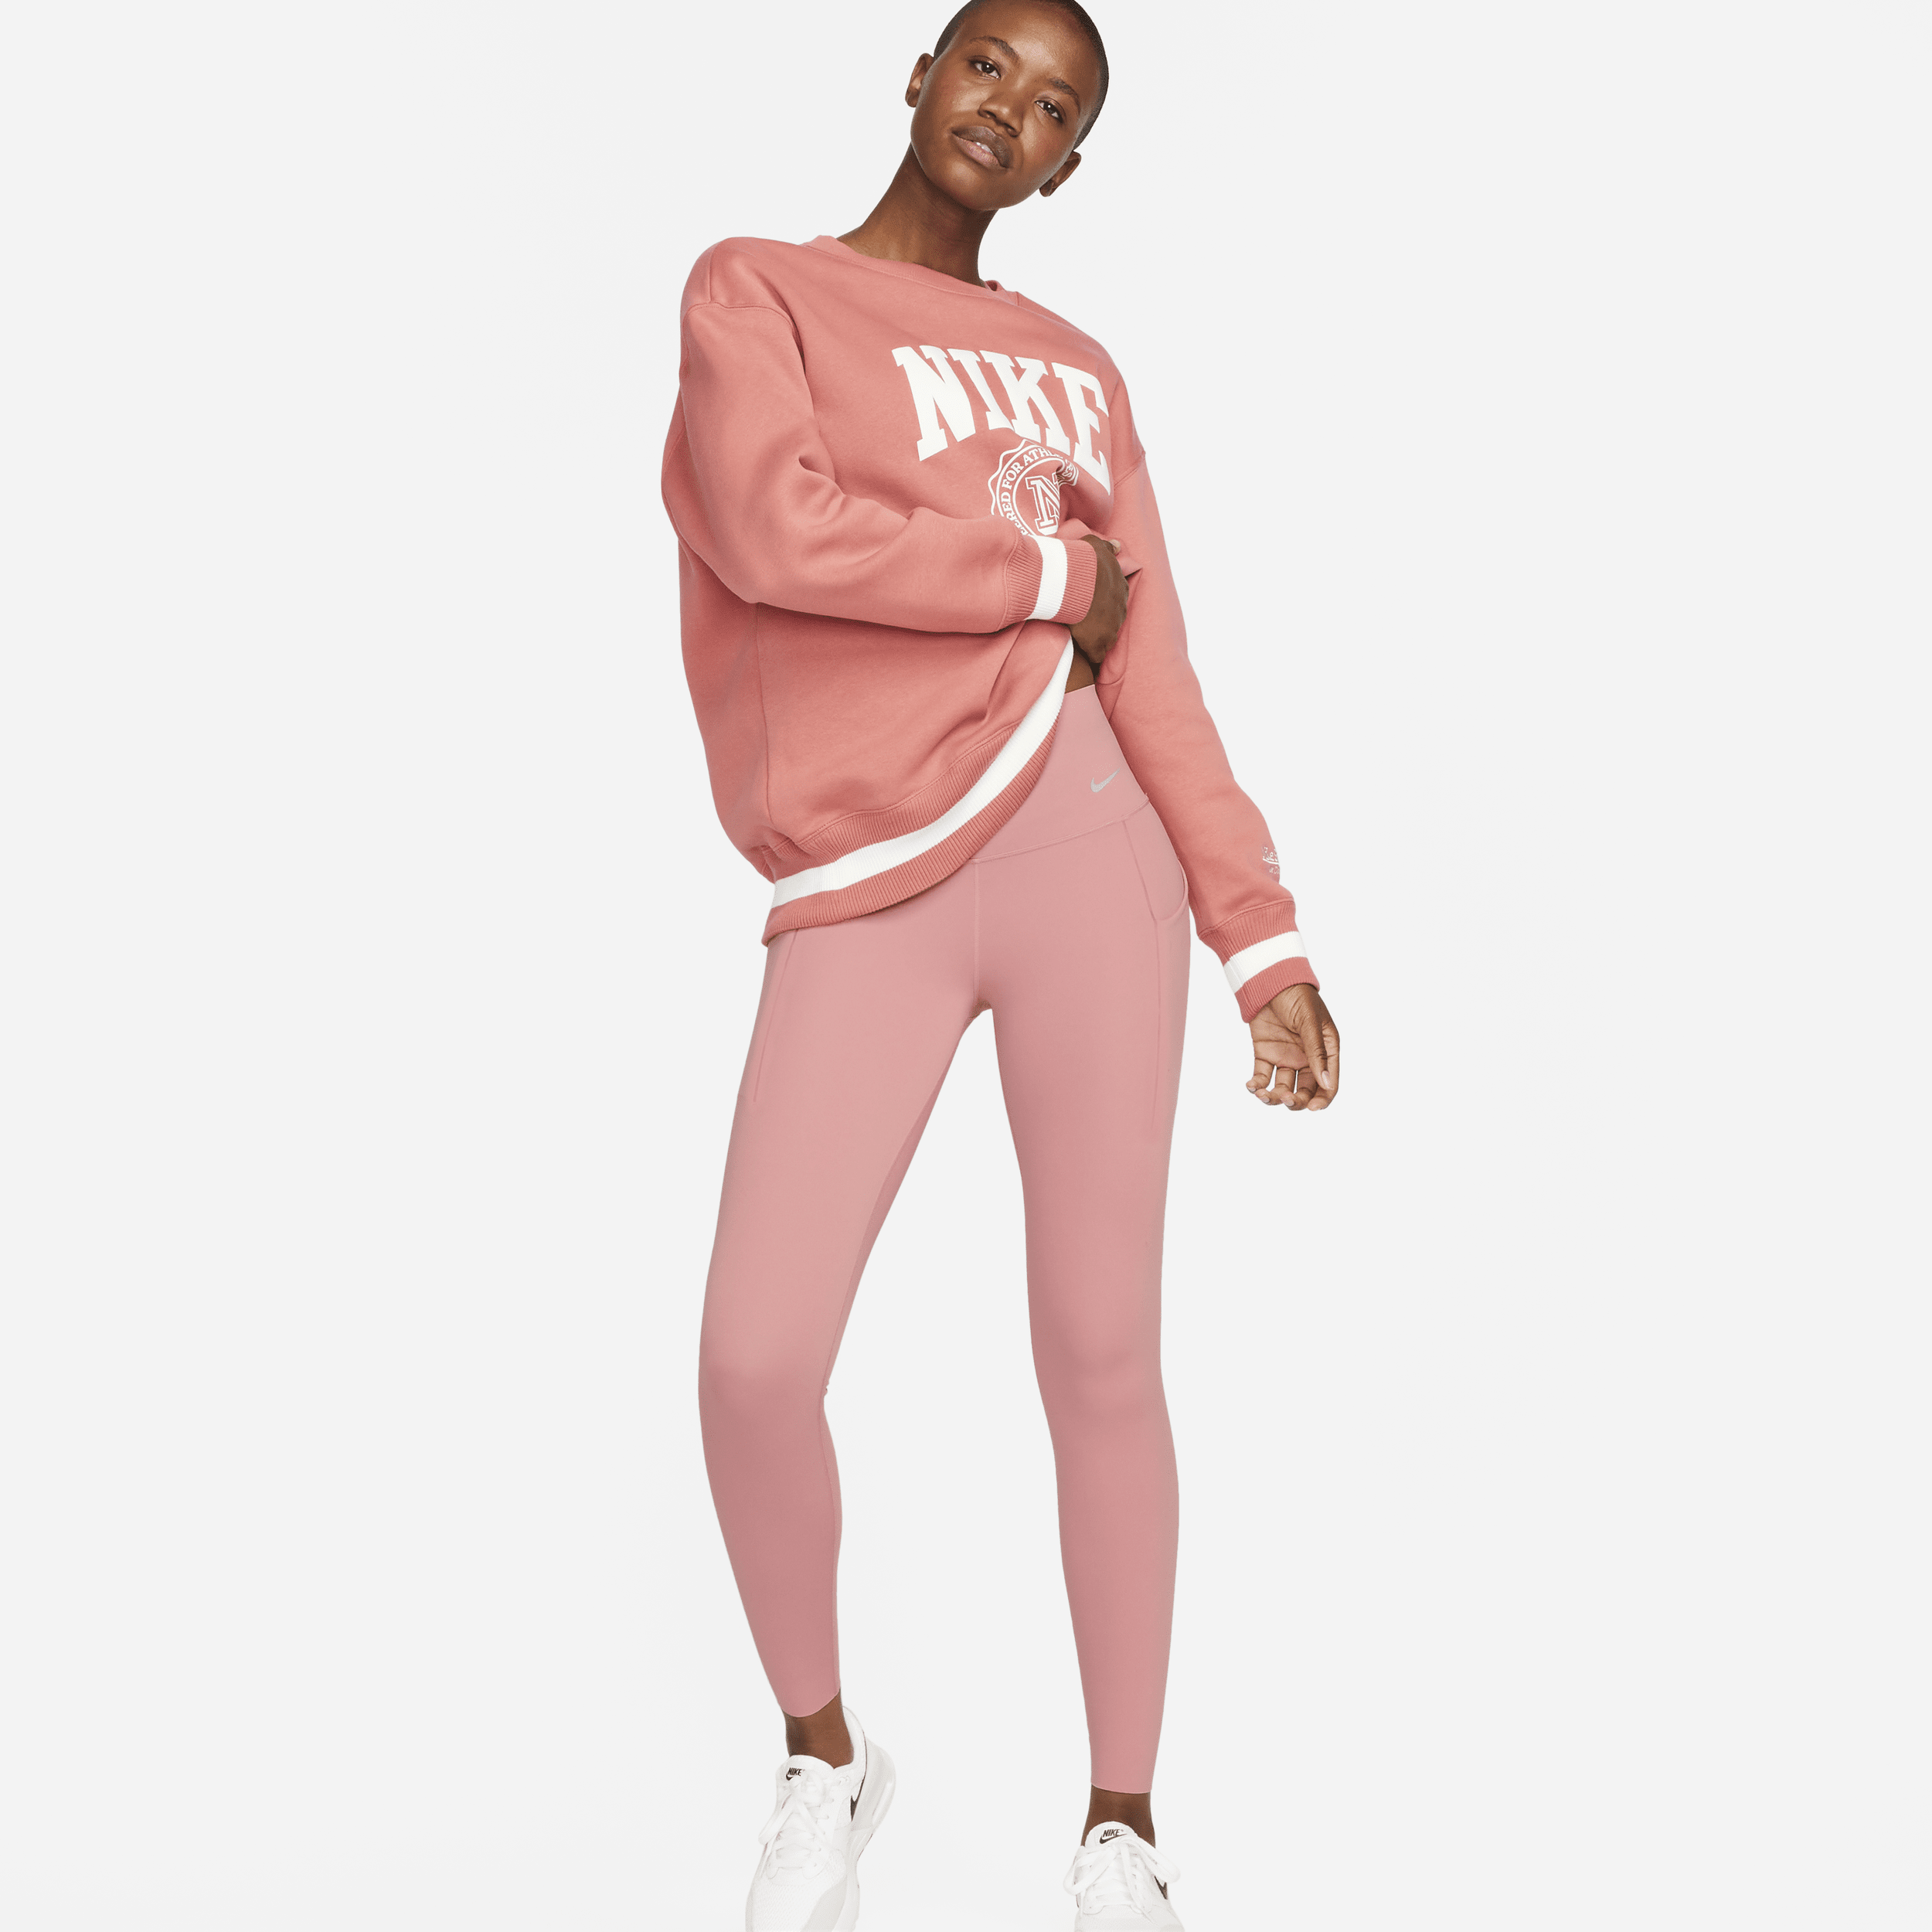 Nike Universa-leggings i fuld længde med medium støtte, høj talje og lommer til kvinder - Pink